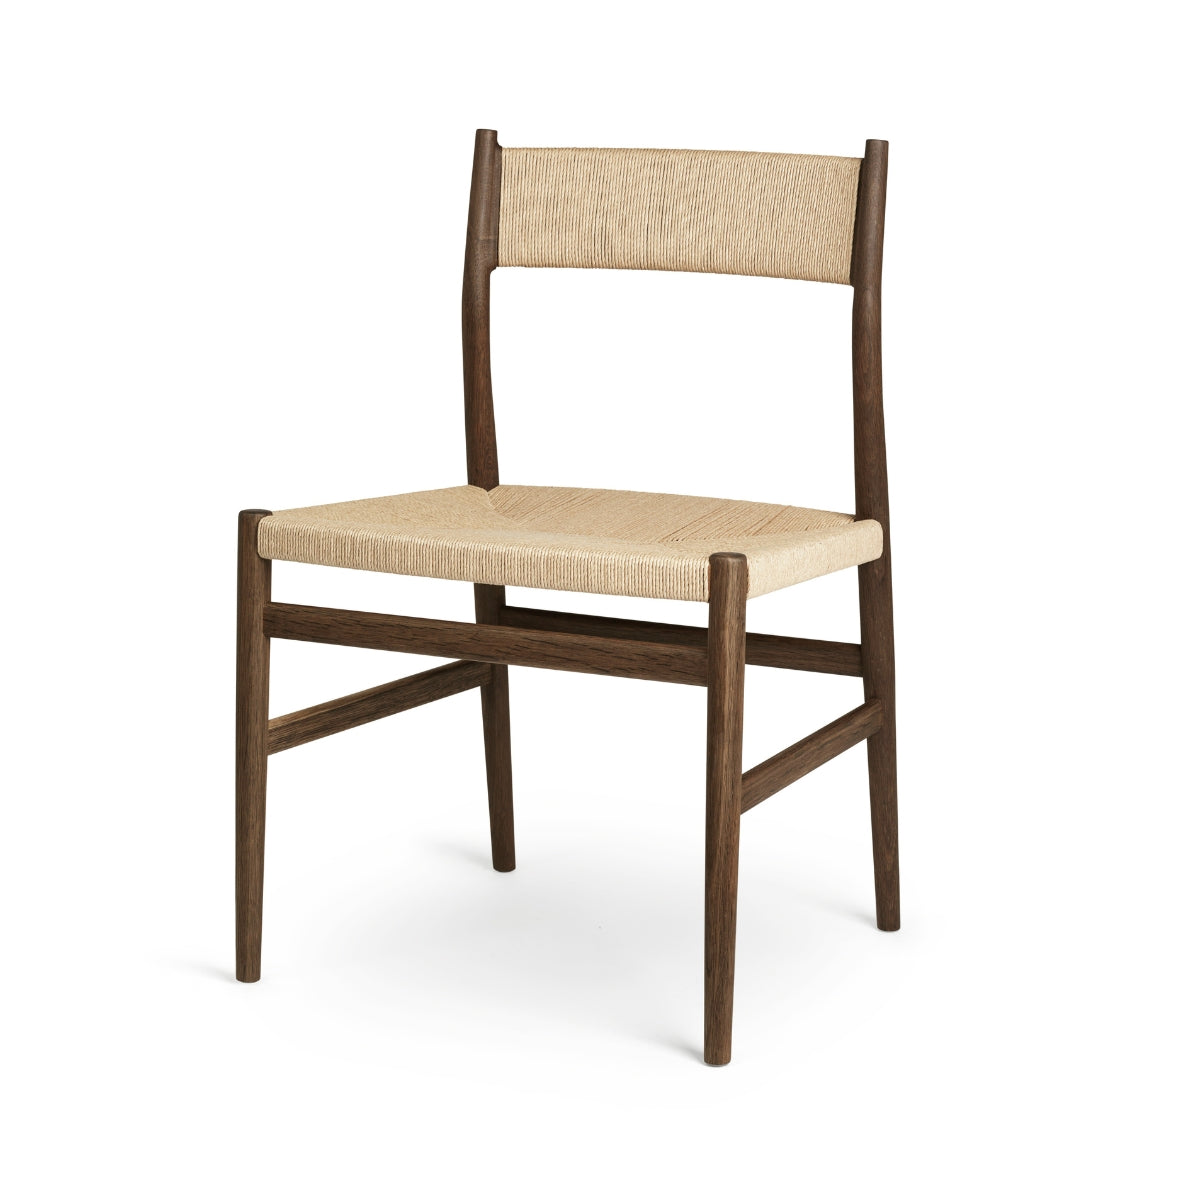 Brdr. Krüger | Arv Chair Without Armrest, Weaved Backrest - Weaved Seat